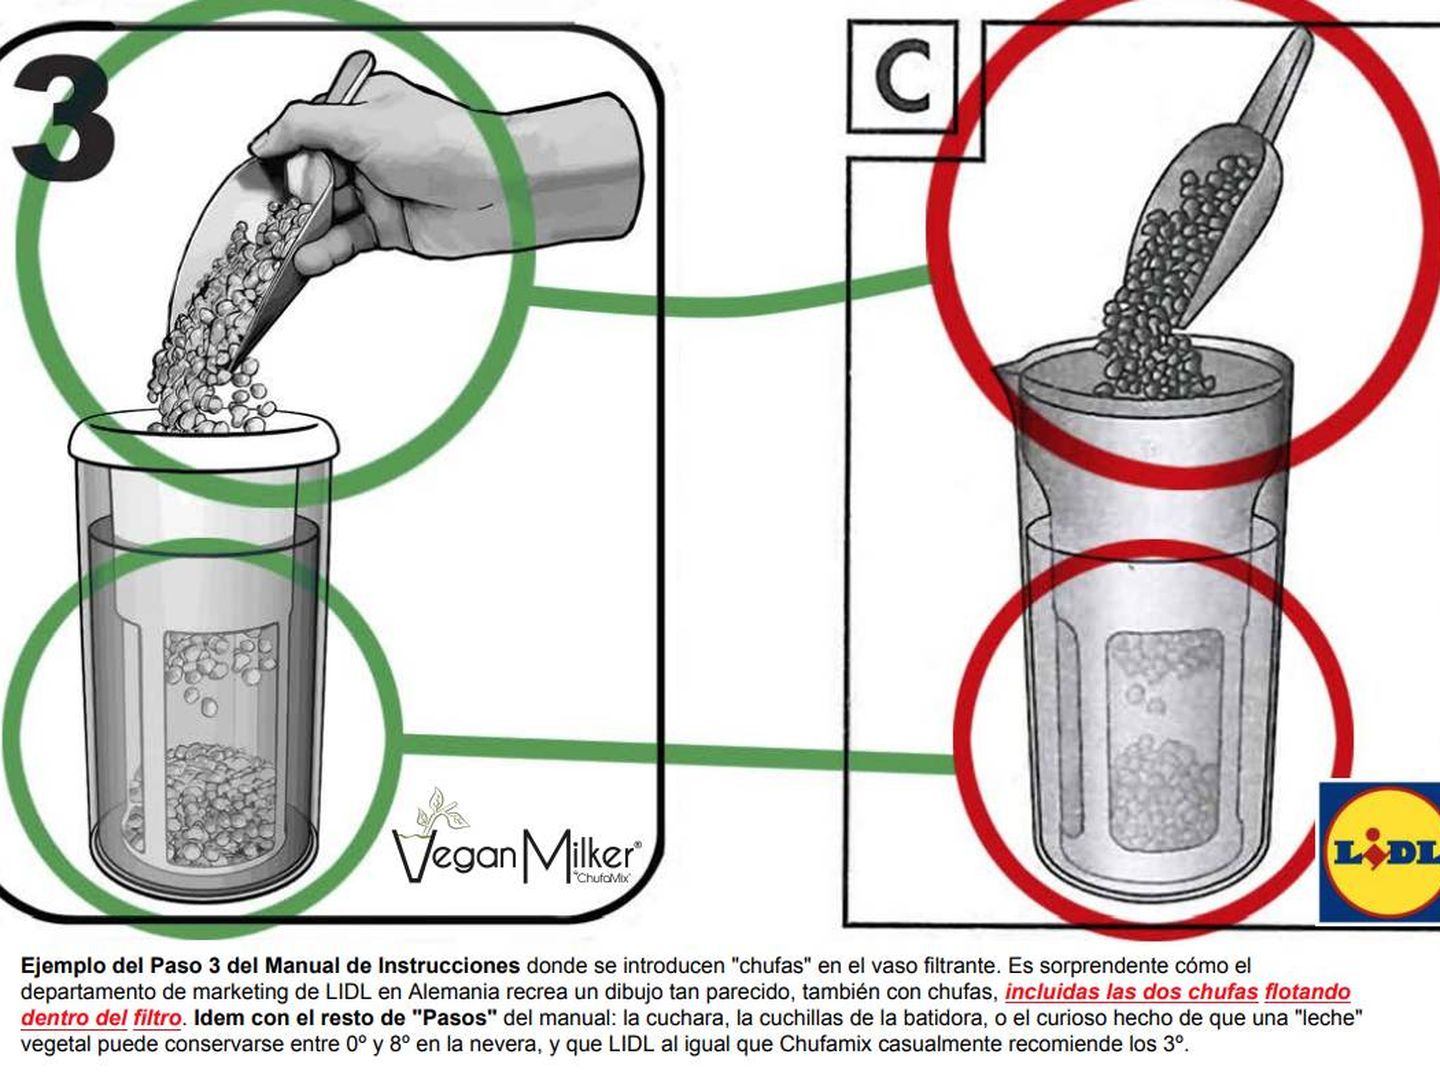 El manual de instrucciones de ambos utensilios (la Vengan Milker de Chufamix y la Veggie Drink Maker de Lidl), prácticamente idéntico. 